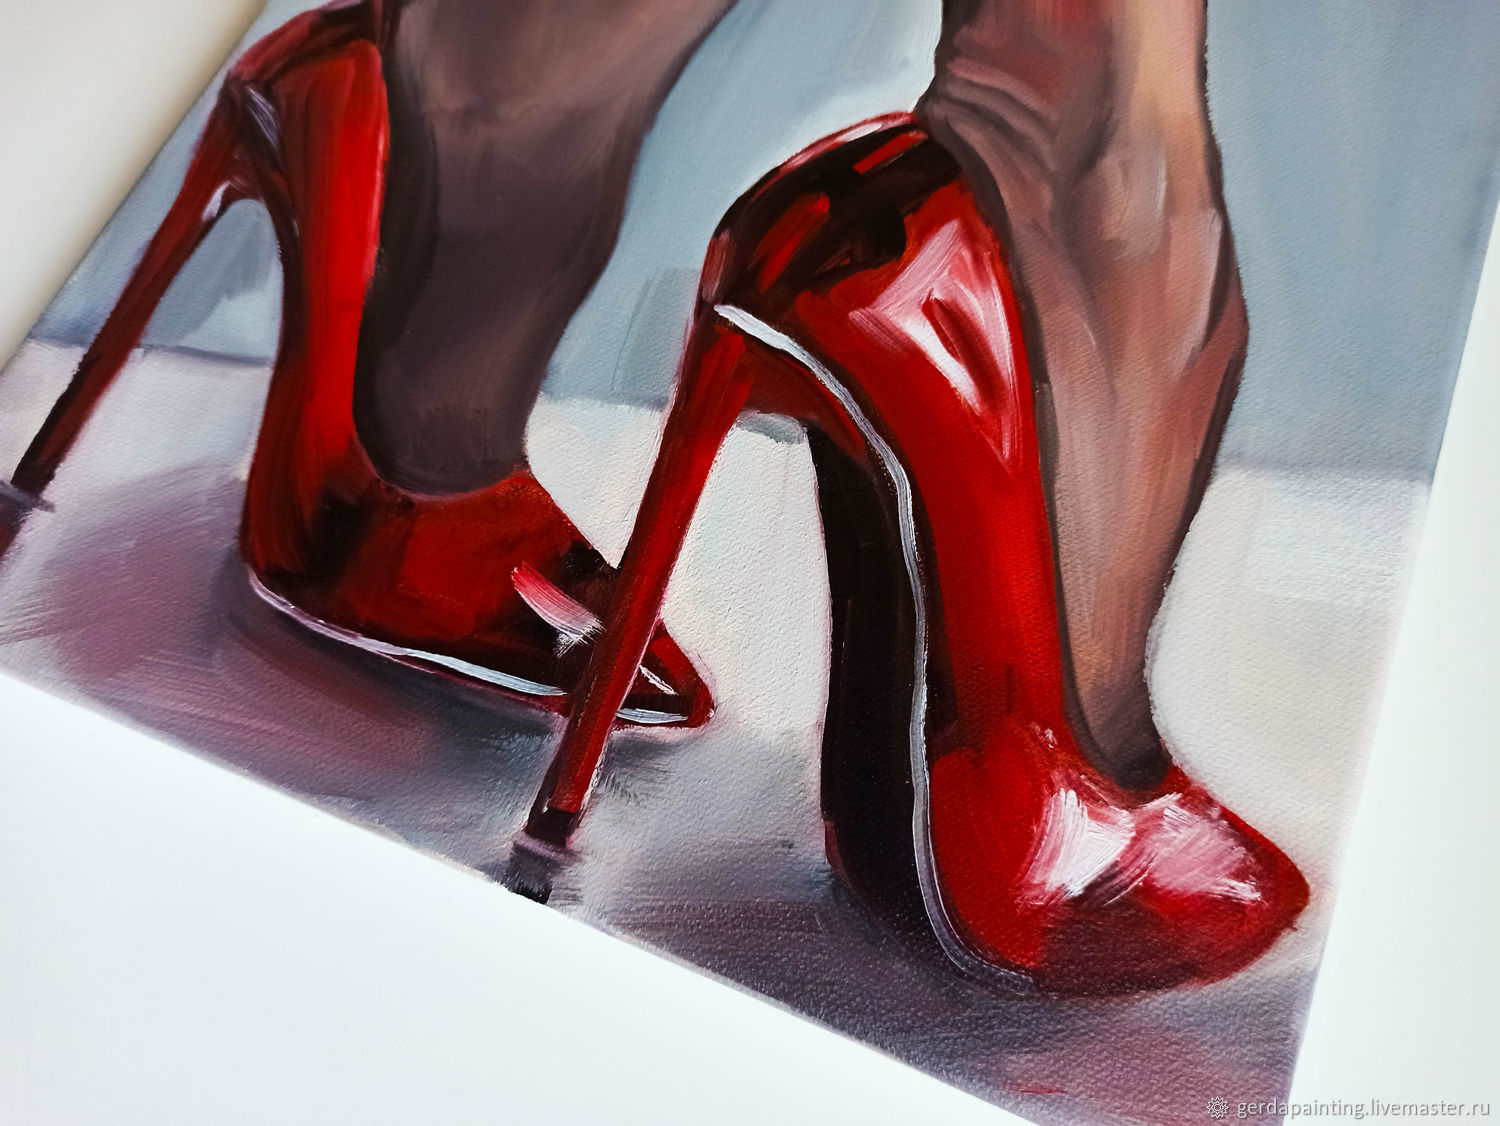 Картина маслом Красные туфли в интернет-магазине на Ярмарке Мастеров. 